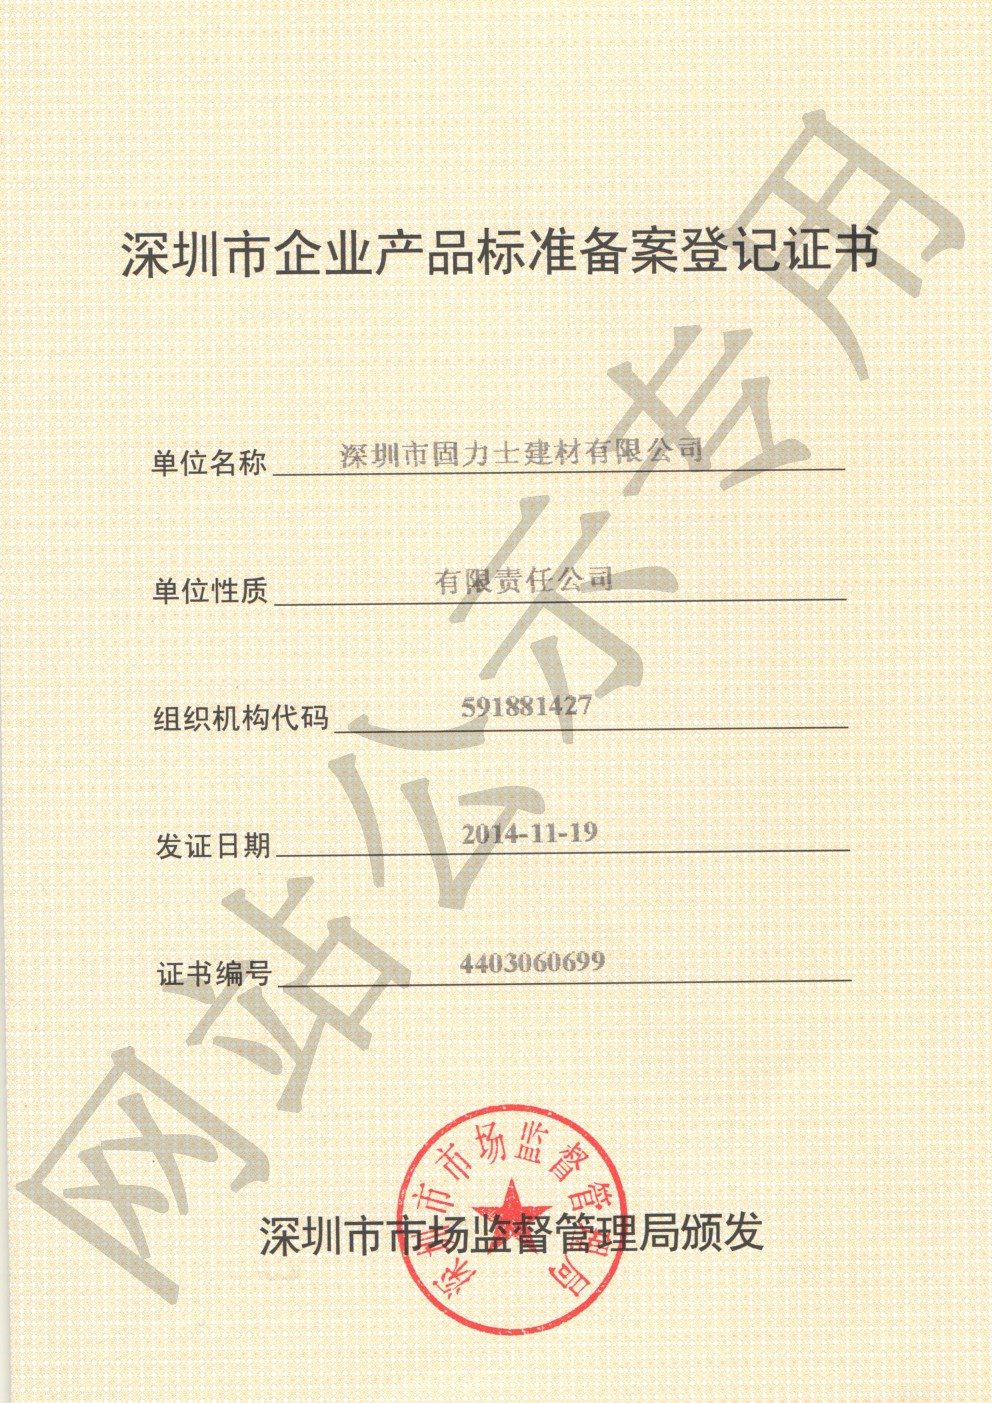 寿宁企业产品标准登记证书